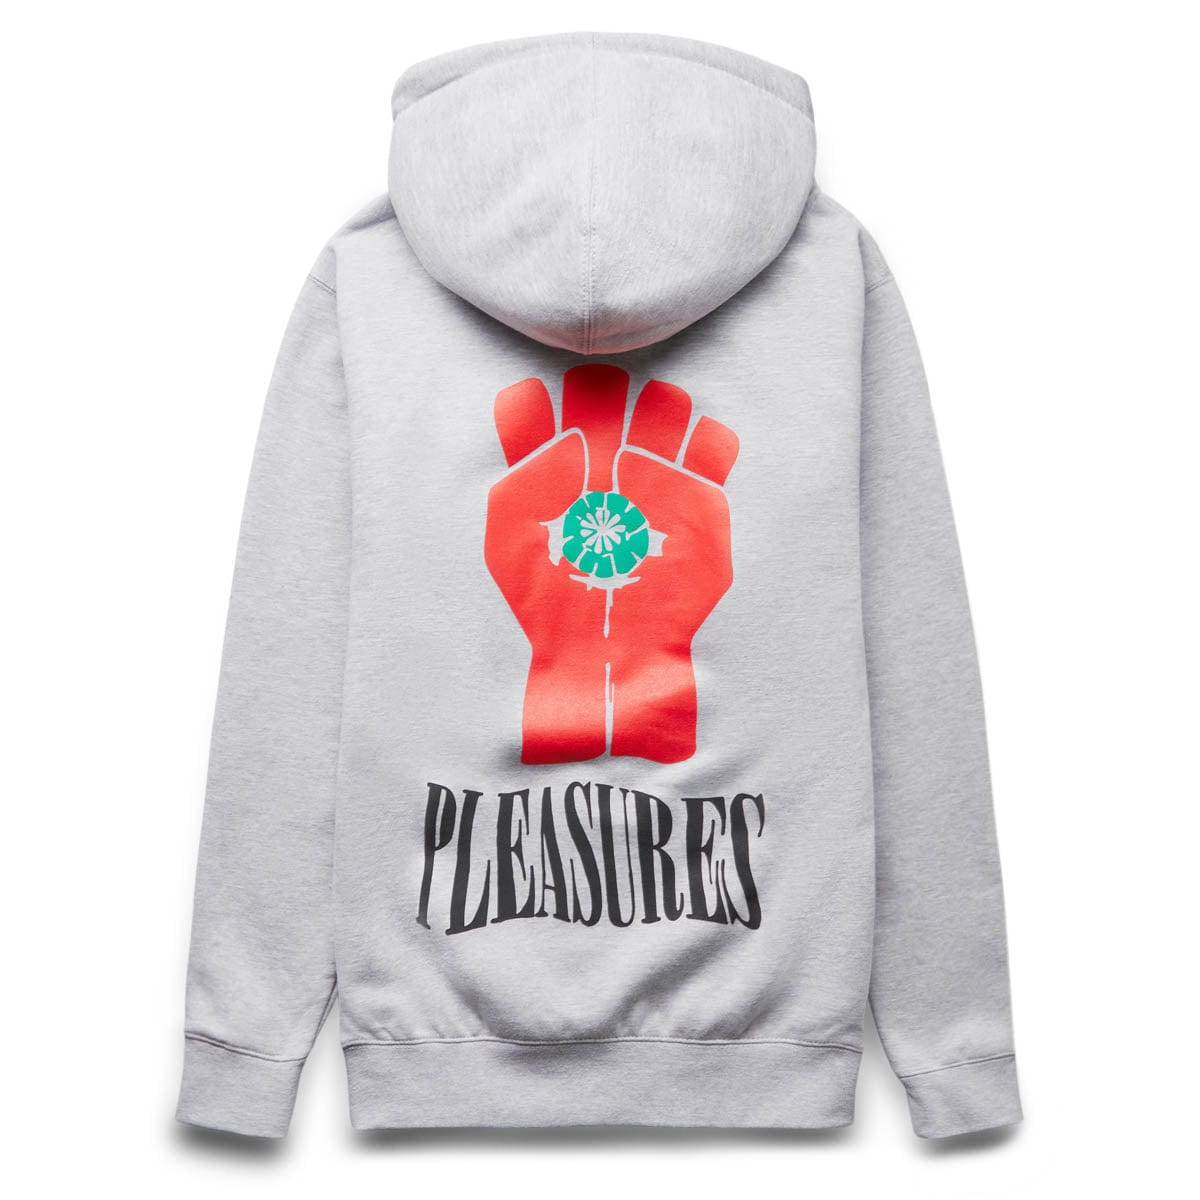 Pleasures Hoodies & Sweatshirts HST ZIP HOODIE